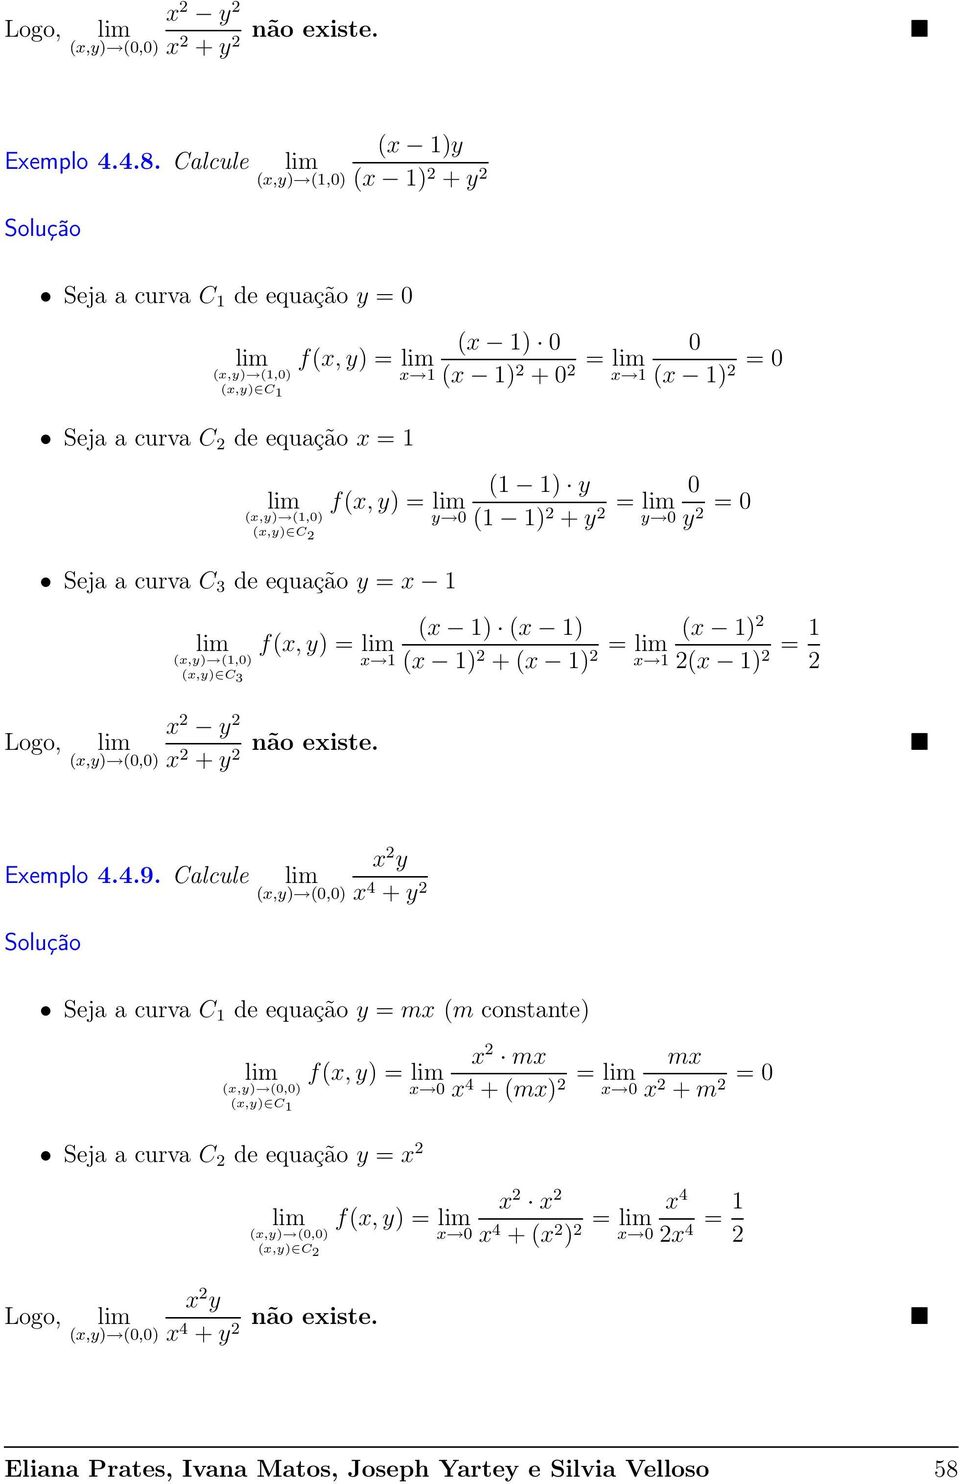 (x,y) (1,0) y 0 (x,y) C Seja a curva C 3 de equação y = x 1 (1 1) y (1 1) + y = y 0 0 y = 0 (x 1) (x 1) f(x, y) = (x,y) (1,0) x 1 (x 1) + (x 1) = (x 1) x 1 (x 1) = 1 (x,y) C 3 Logo, x y